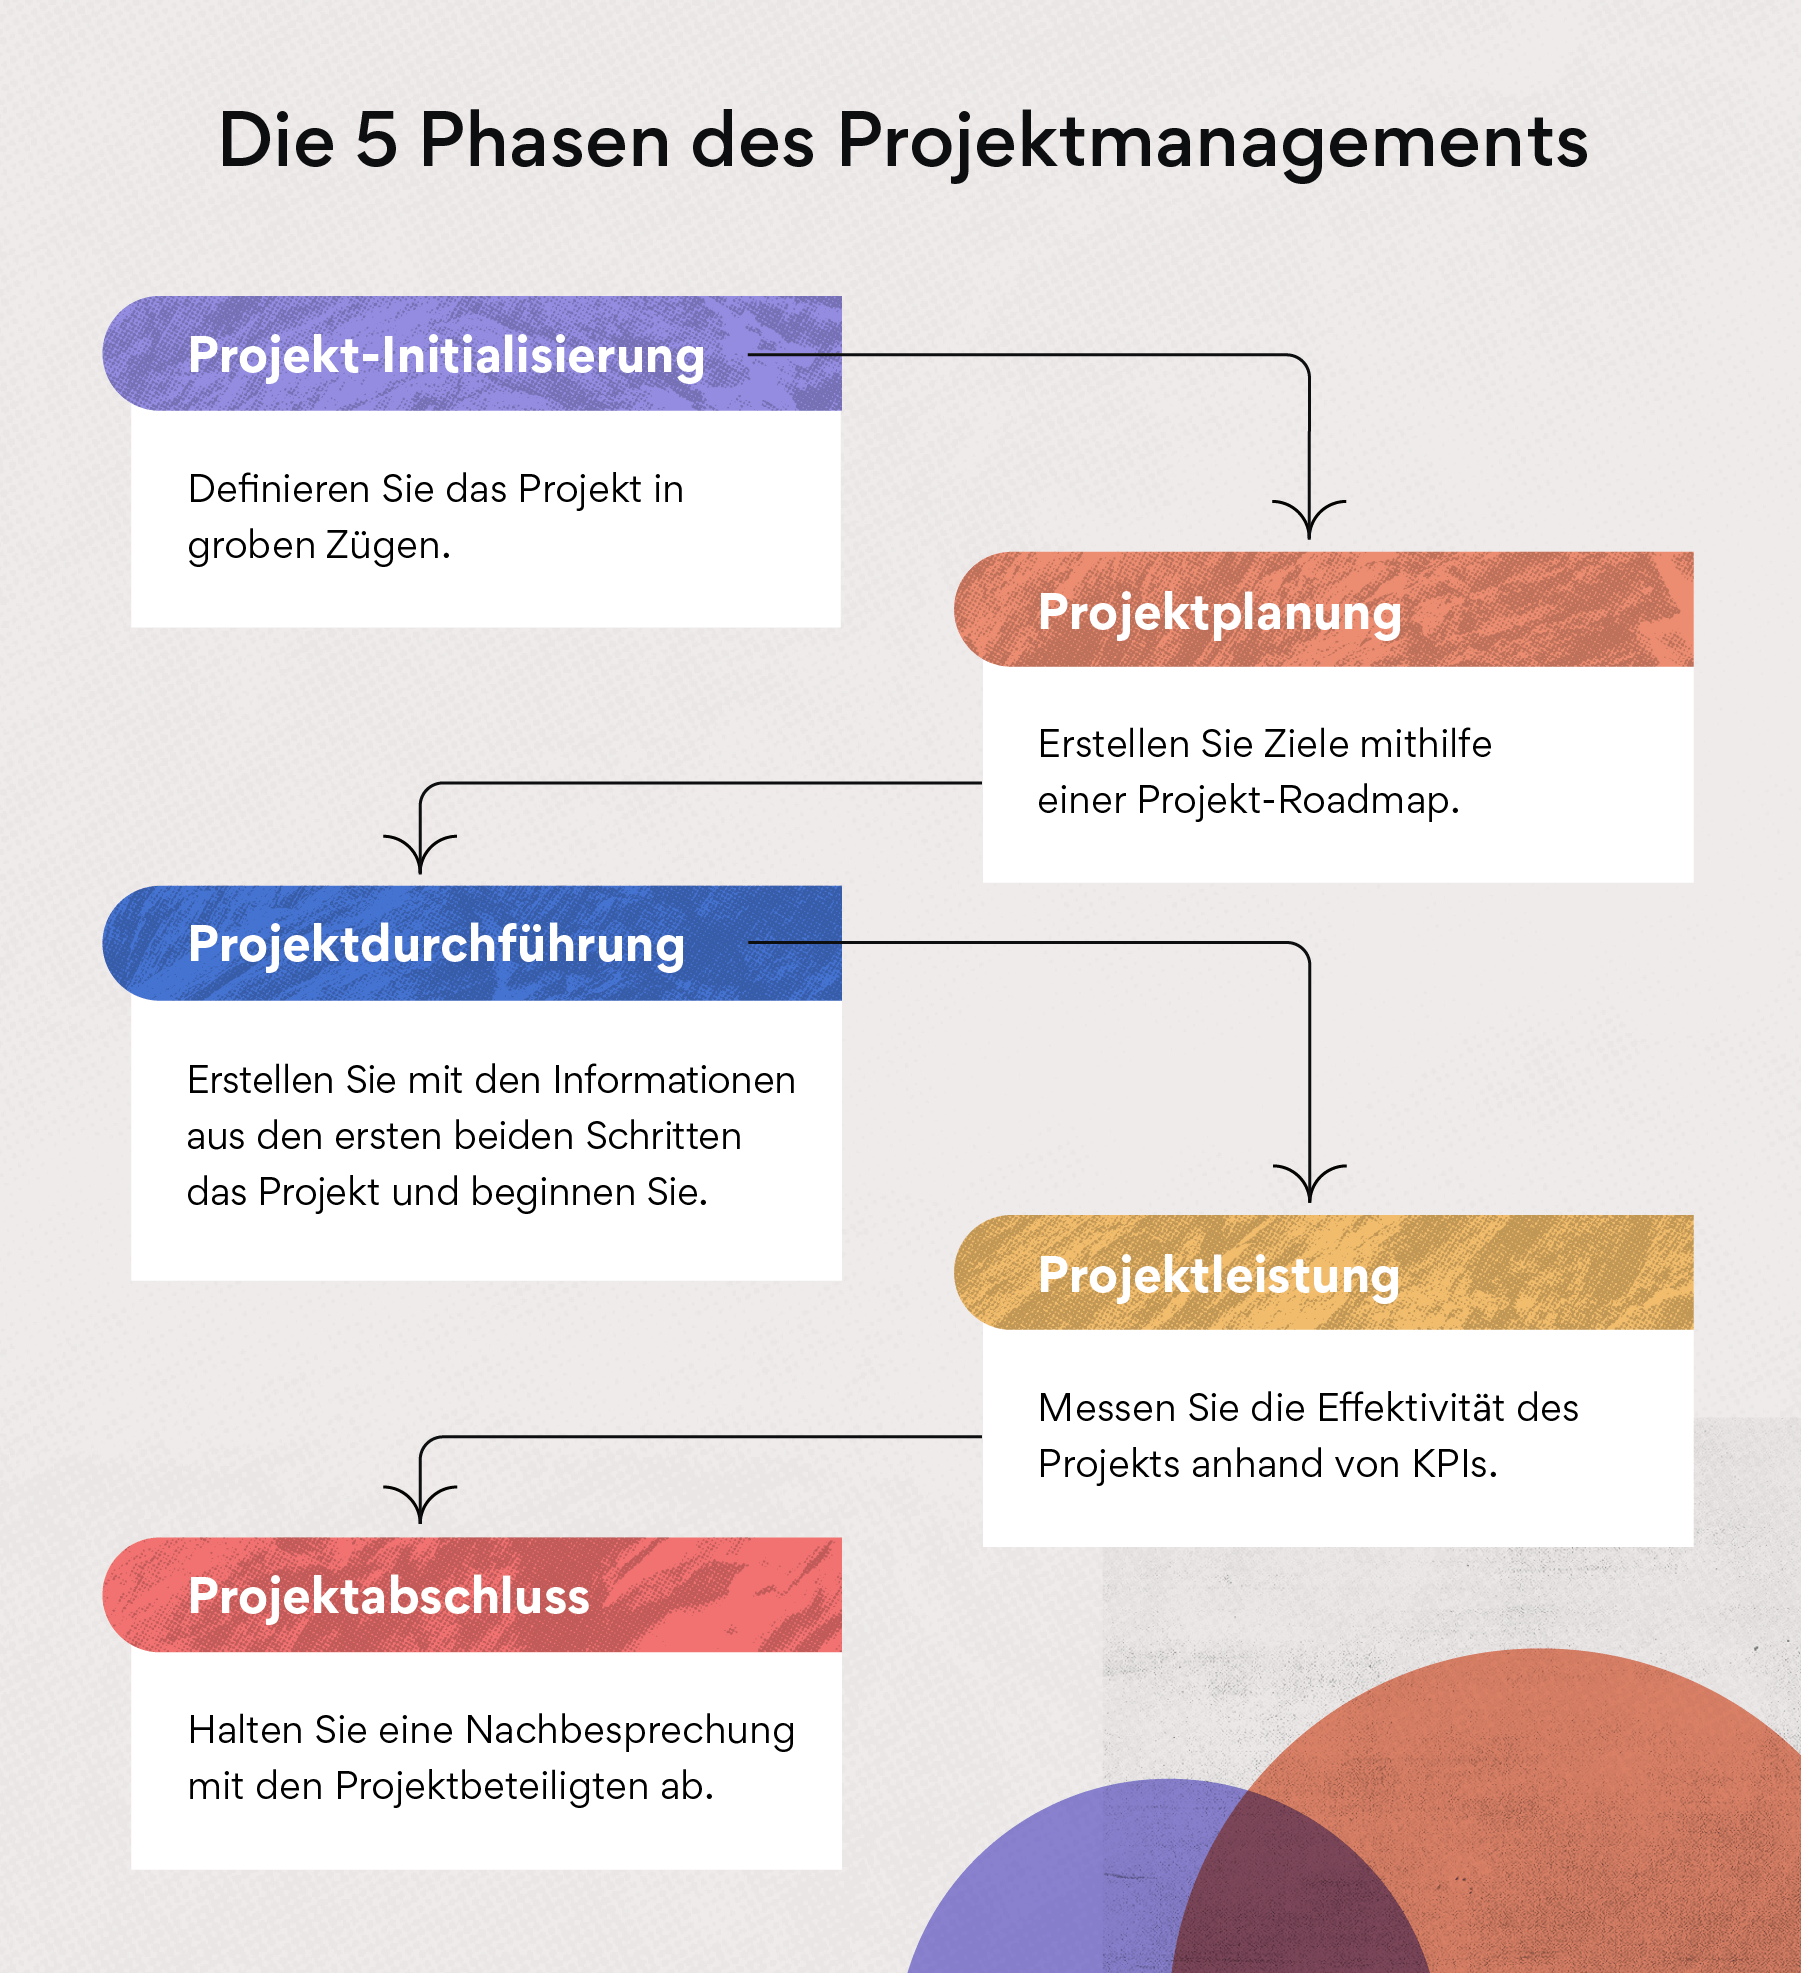 Die 5 Phasen des Projektmanagements